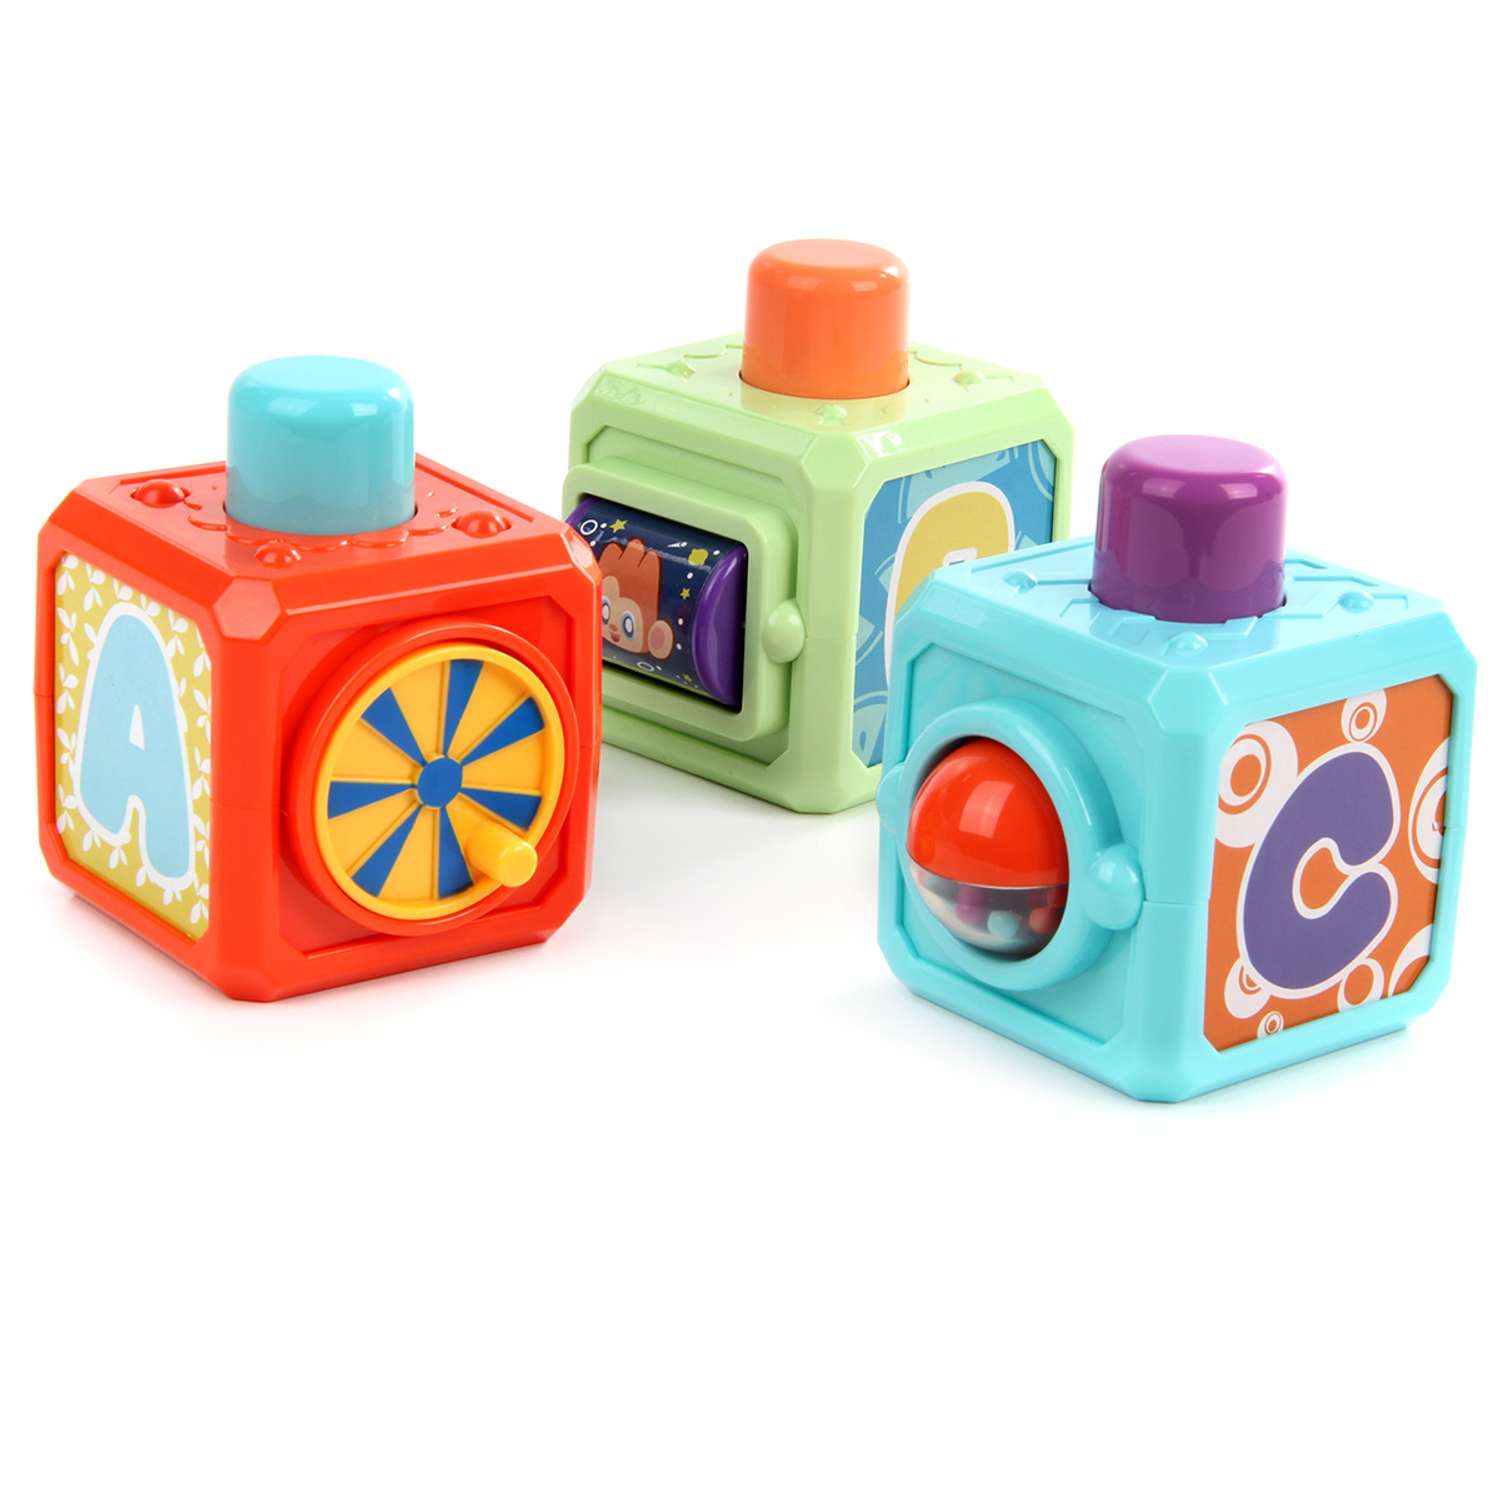 Кубики Veld Co развивающая игрушка со звуком 3 штуки - фото 2